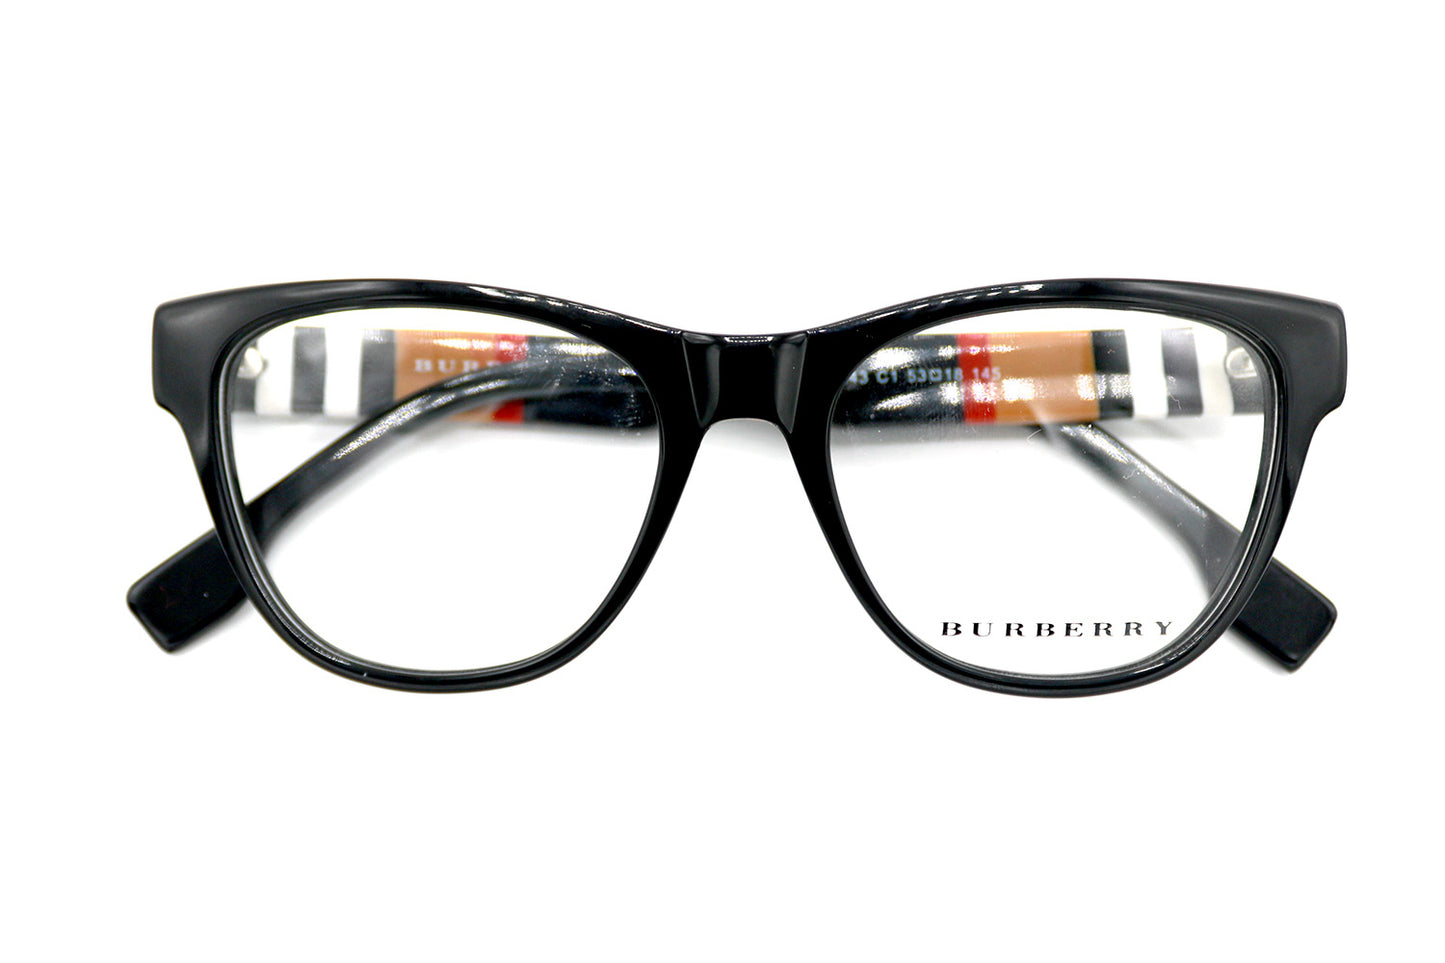 NS Luxury - 2343 - Black - Eyeglasses